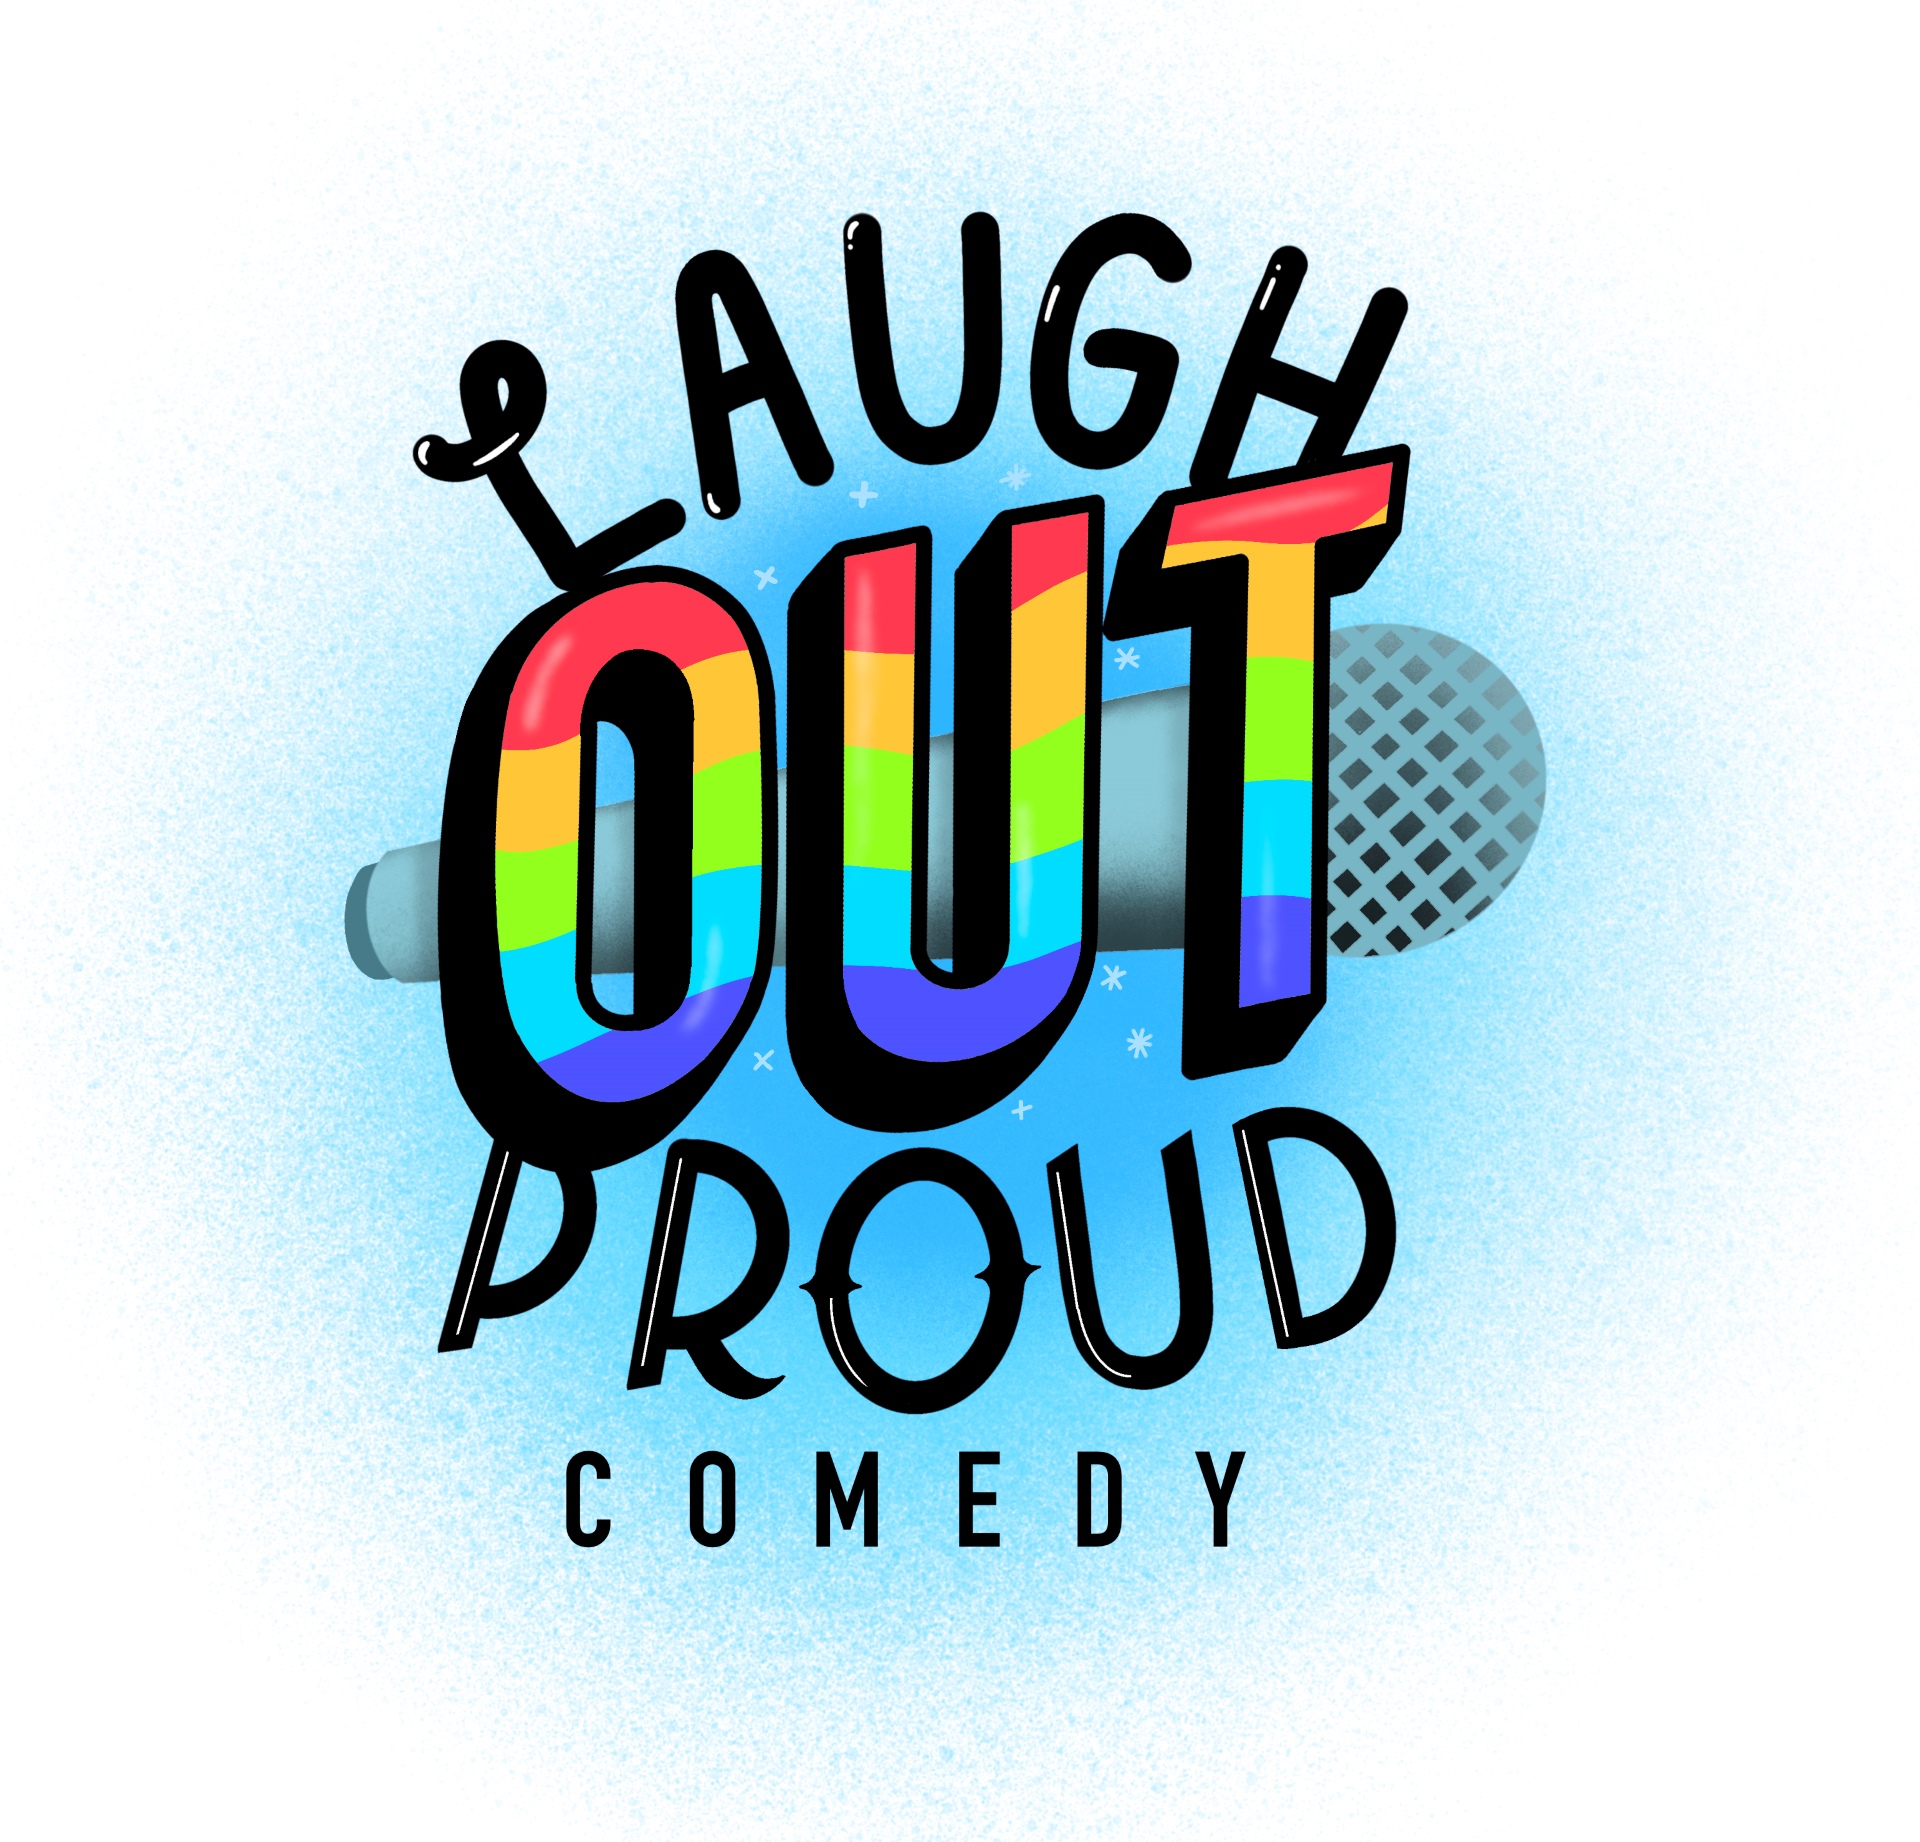 Laugh Emoji Logo Transparent Background Free Download - PNG Images